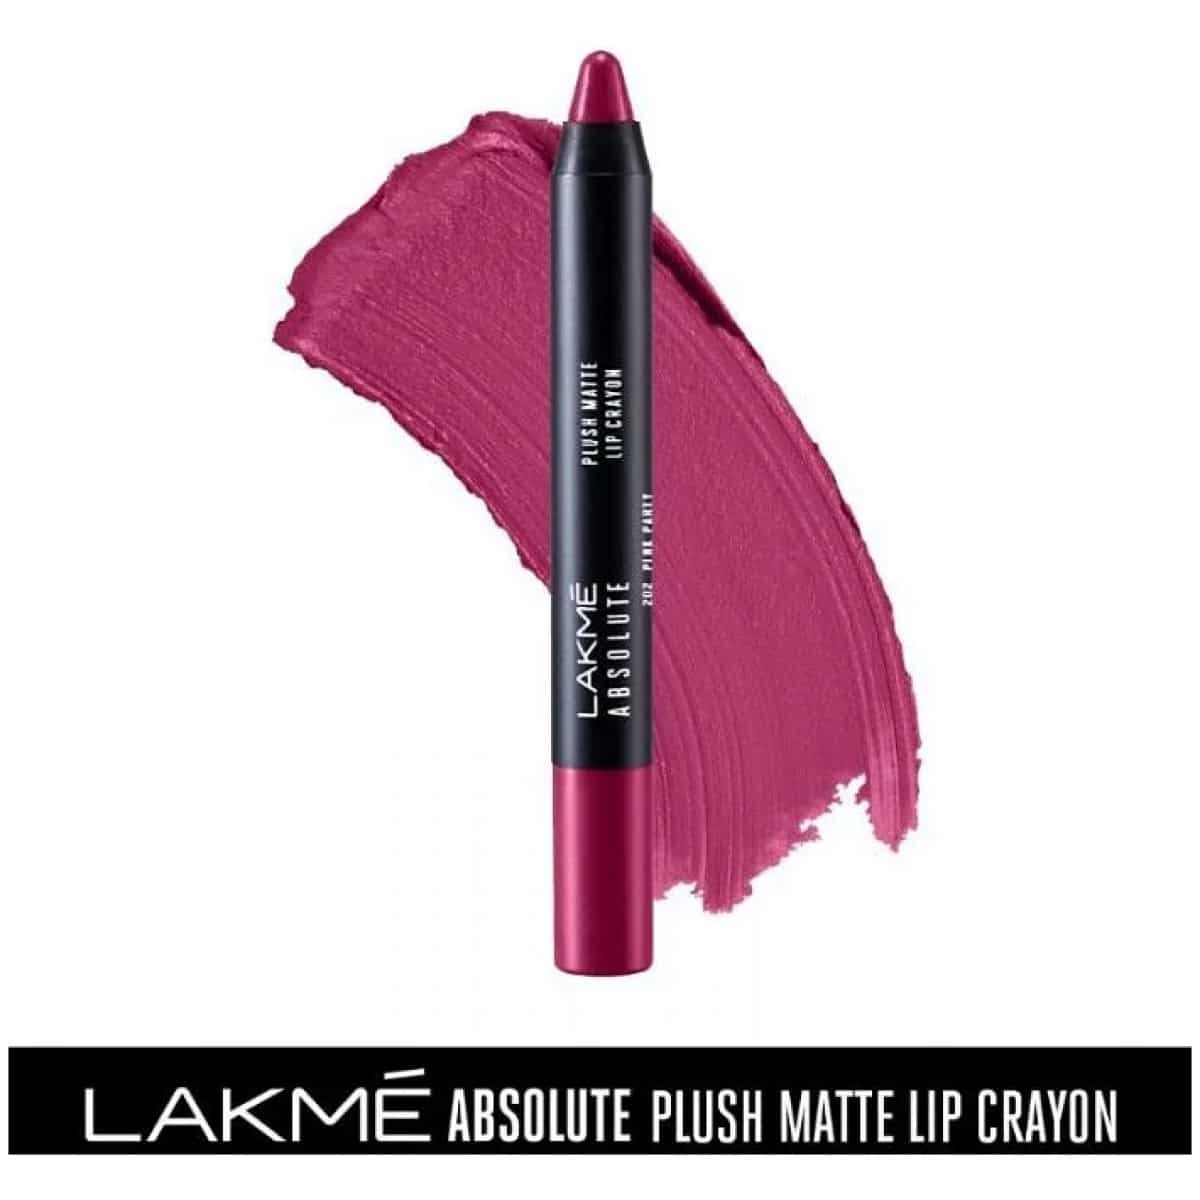 Lakme Absolute Plush Matte Lip Crayon - 202 Pink Party